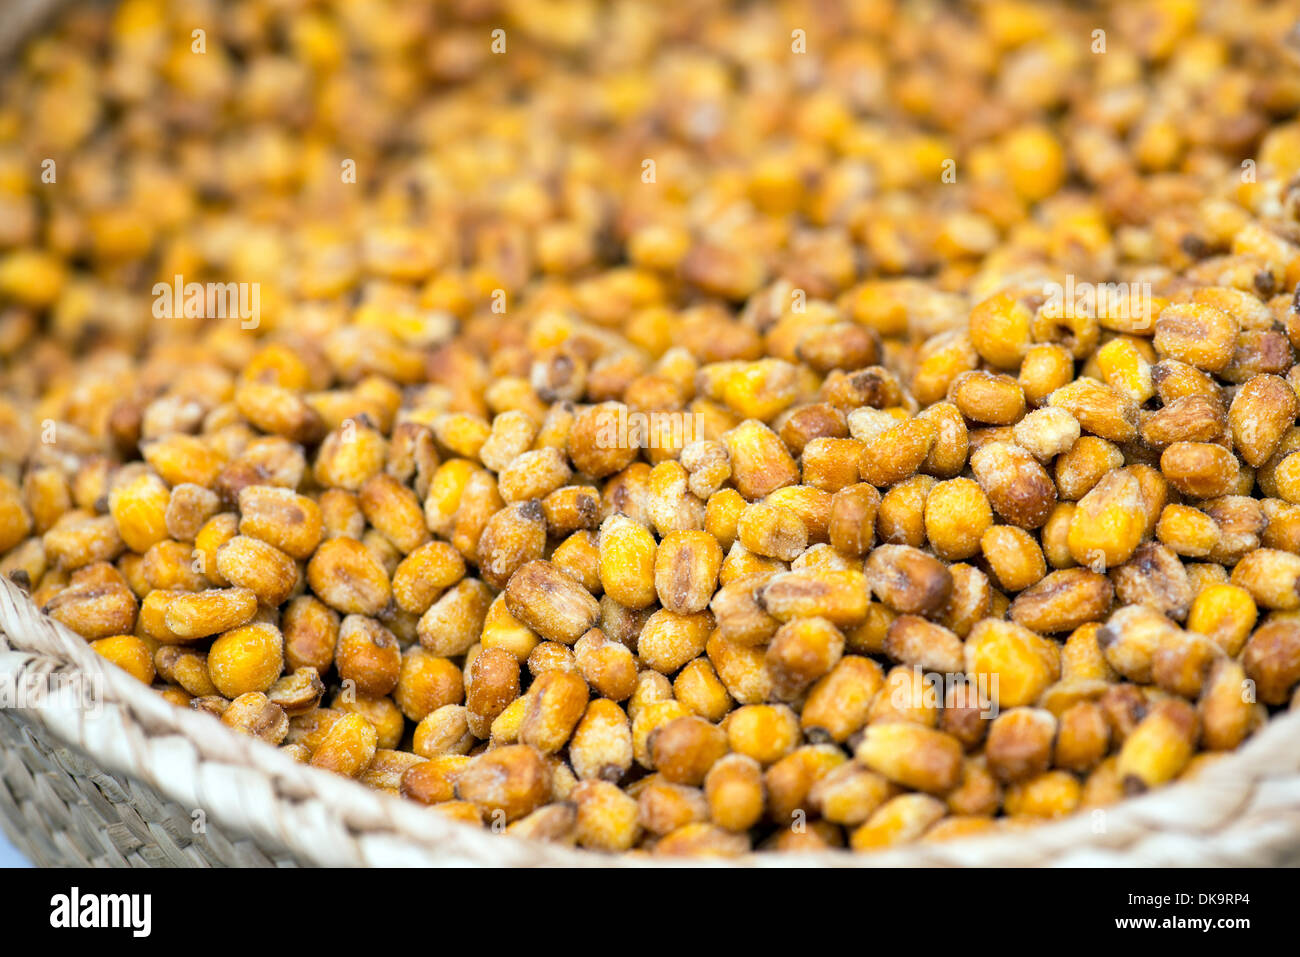 Fried et semences de maïs salée sur le marché espagnol Banque D'Images